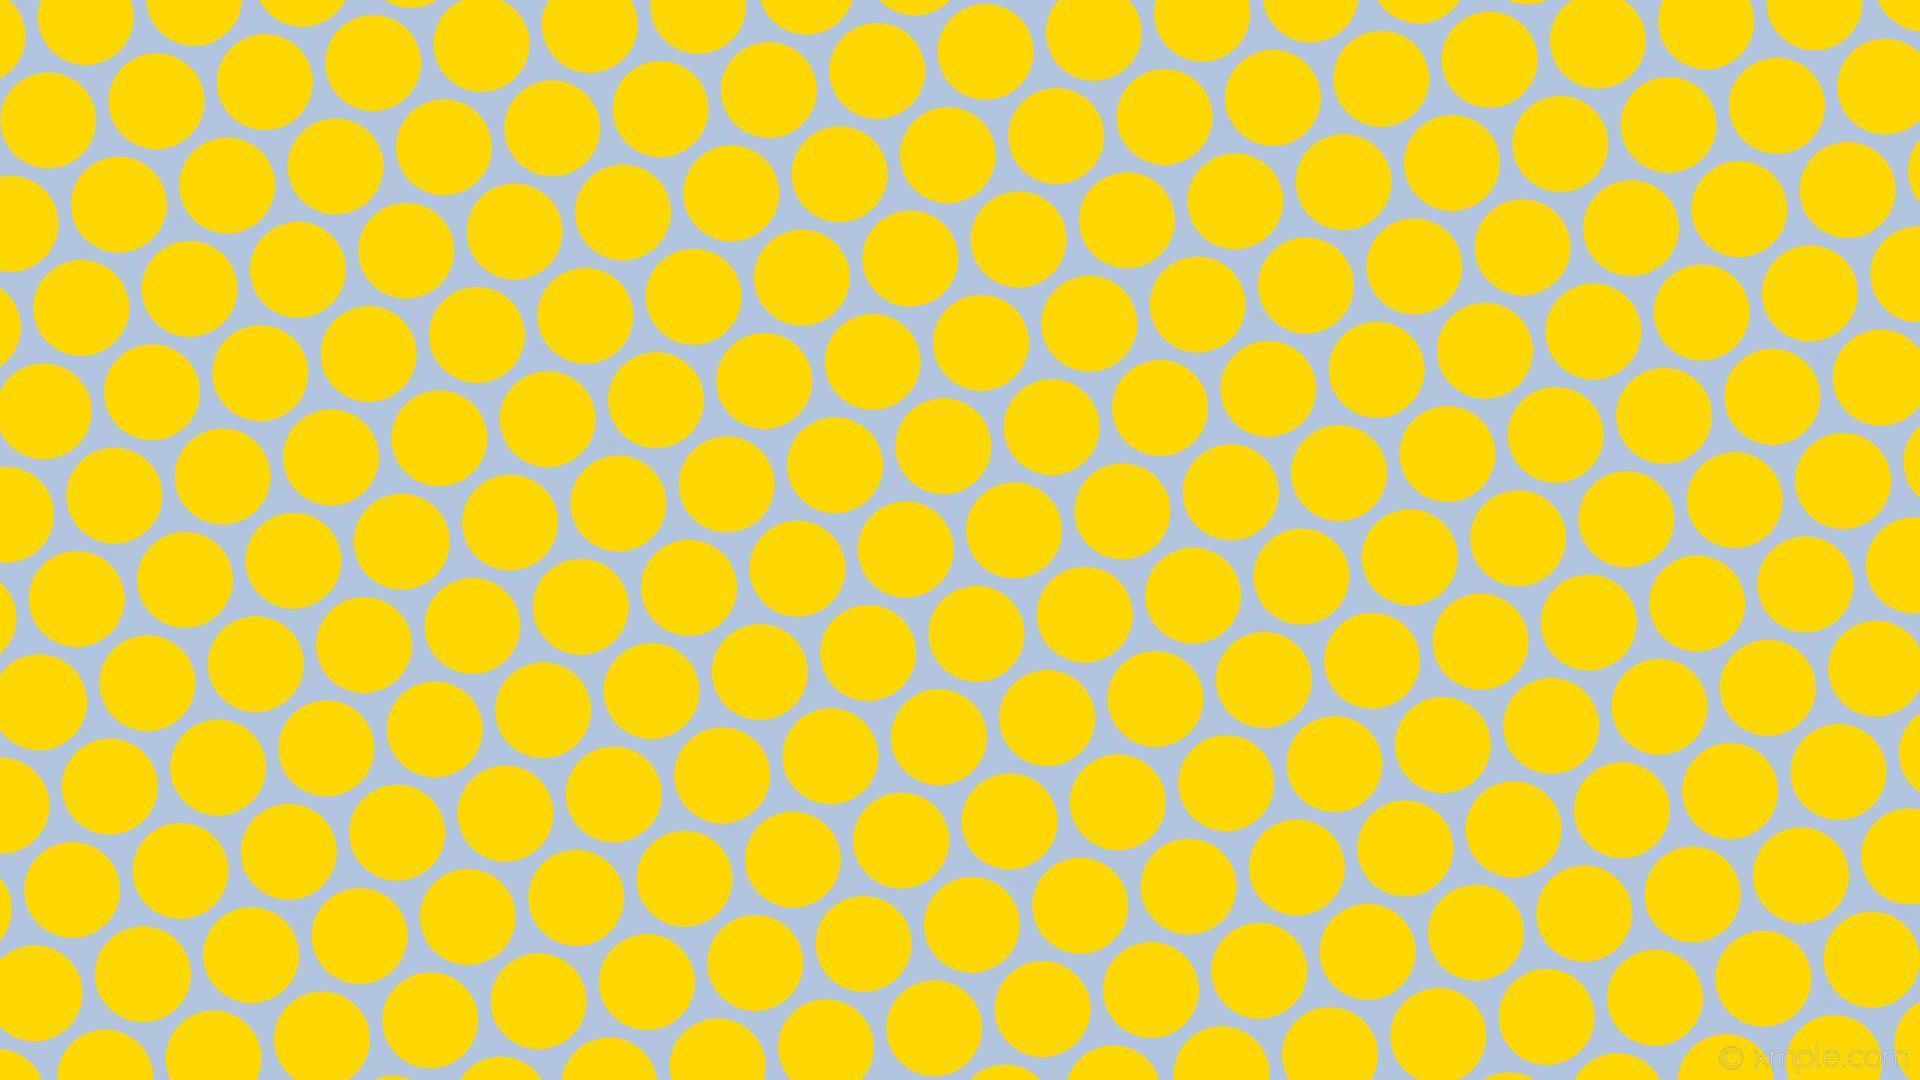 1920x1080 wallpaper blue yellow polka dots hexagon light steel blue gold #b0c4de  #ffd700 diagonal 10